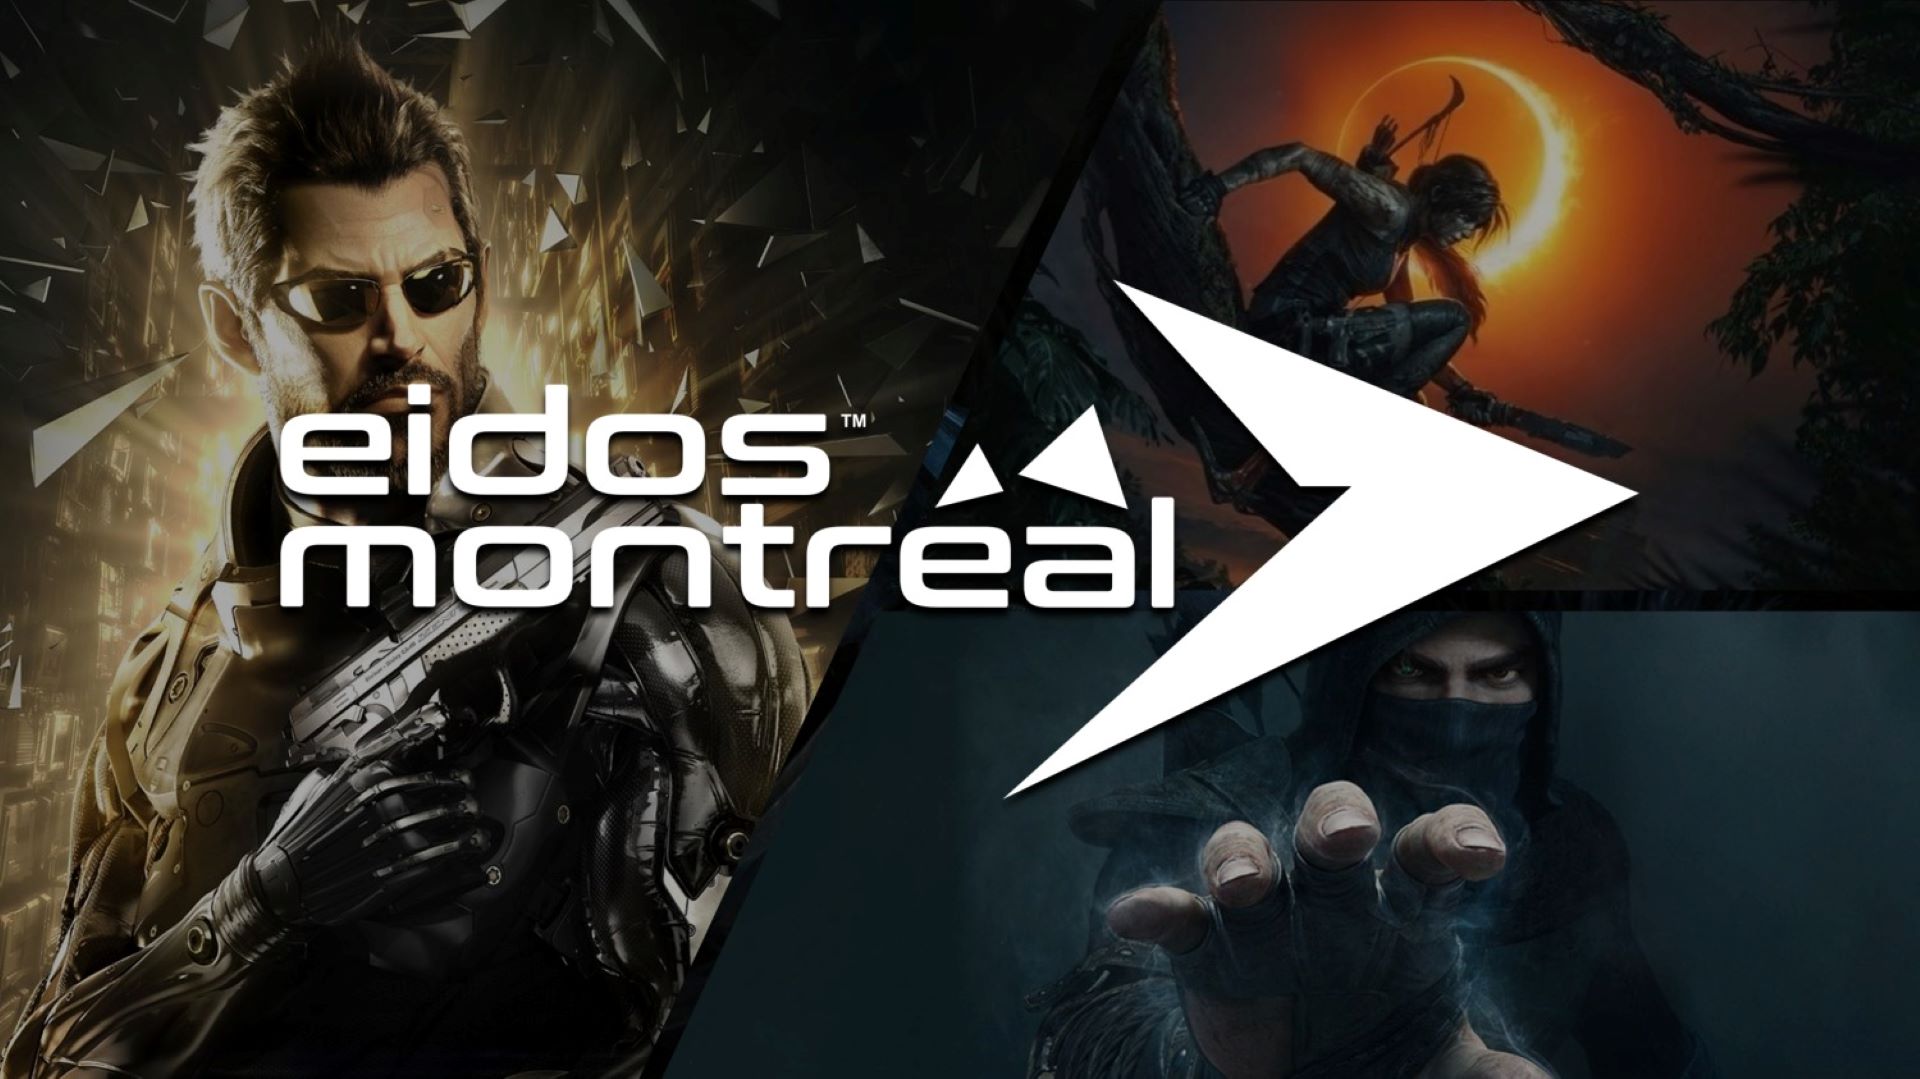 شایعه: ایدوس مونترآل در حال کار روی بازی Deus Ex جدید است